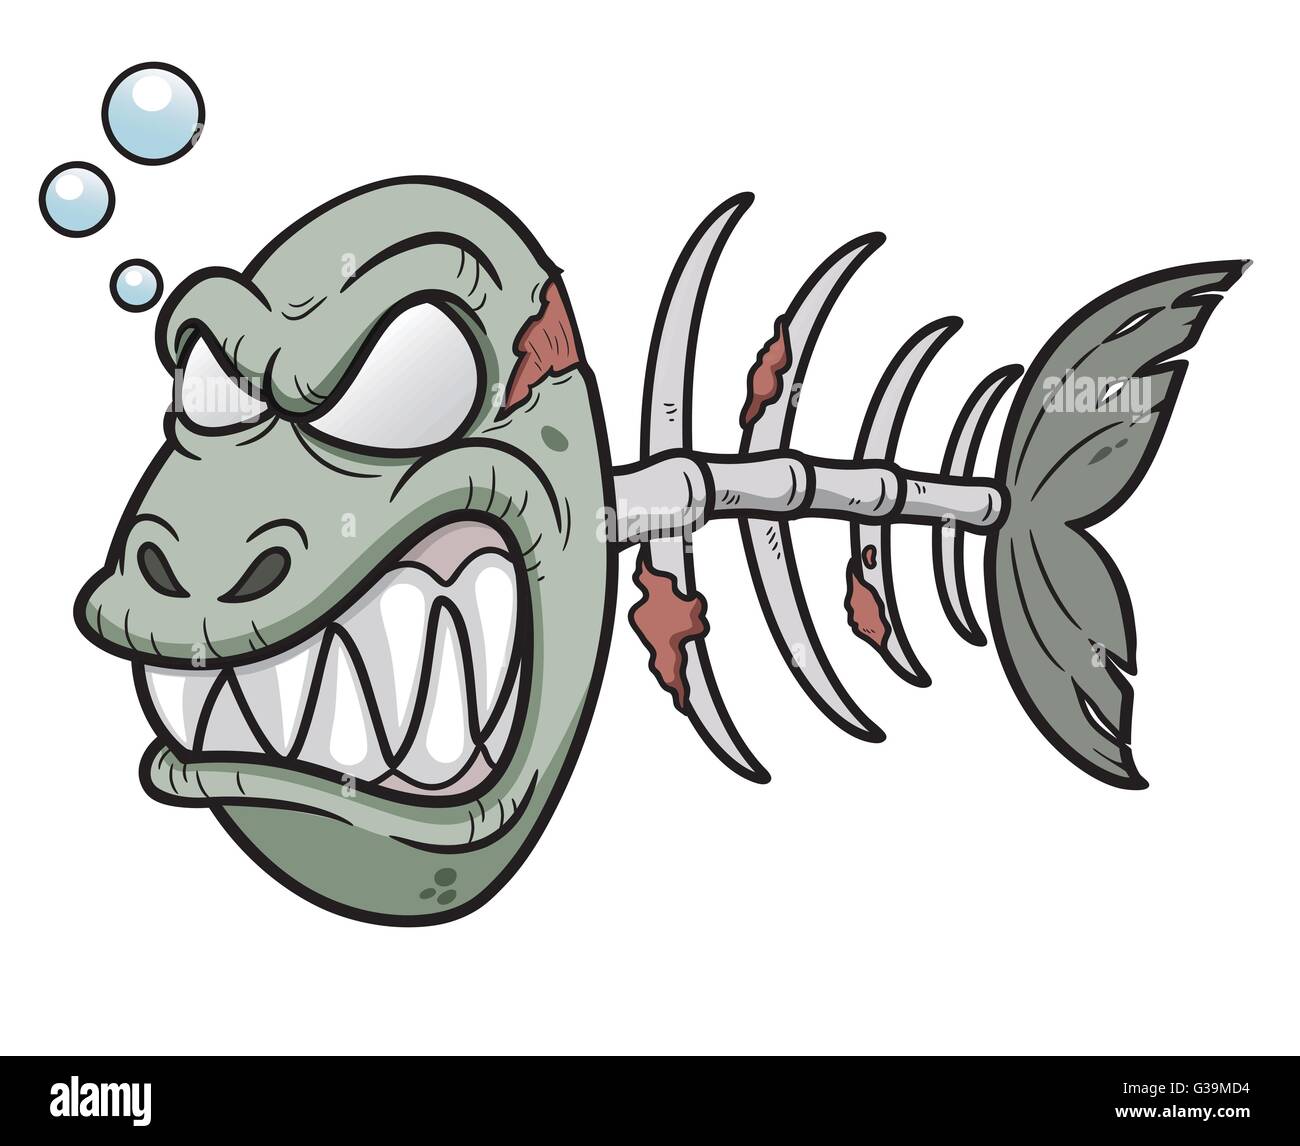 Vektor-Illustration von Cartoon-Zombie-Fisch Stock Vektor